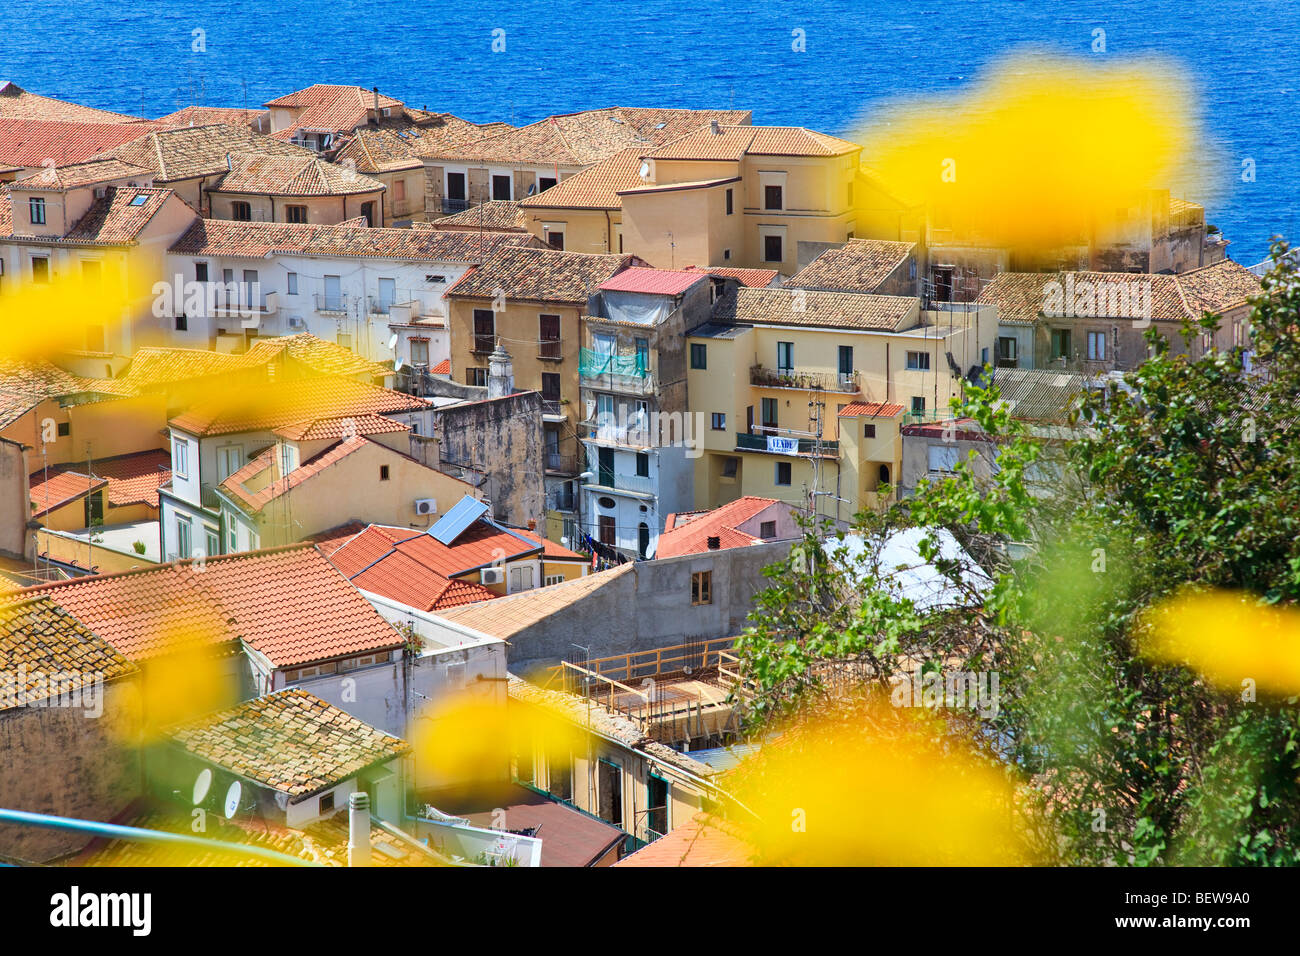 Vue sur les toits de Pizzo avec la mer en arrière-plan, Calabre, Italie, high angle view Banque D'Images